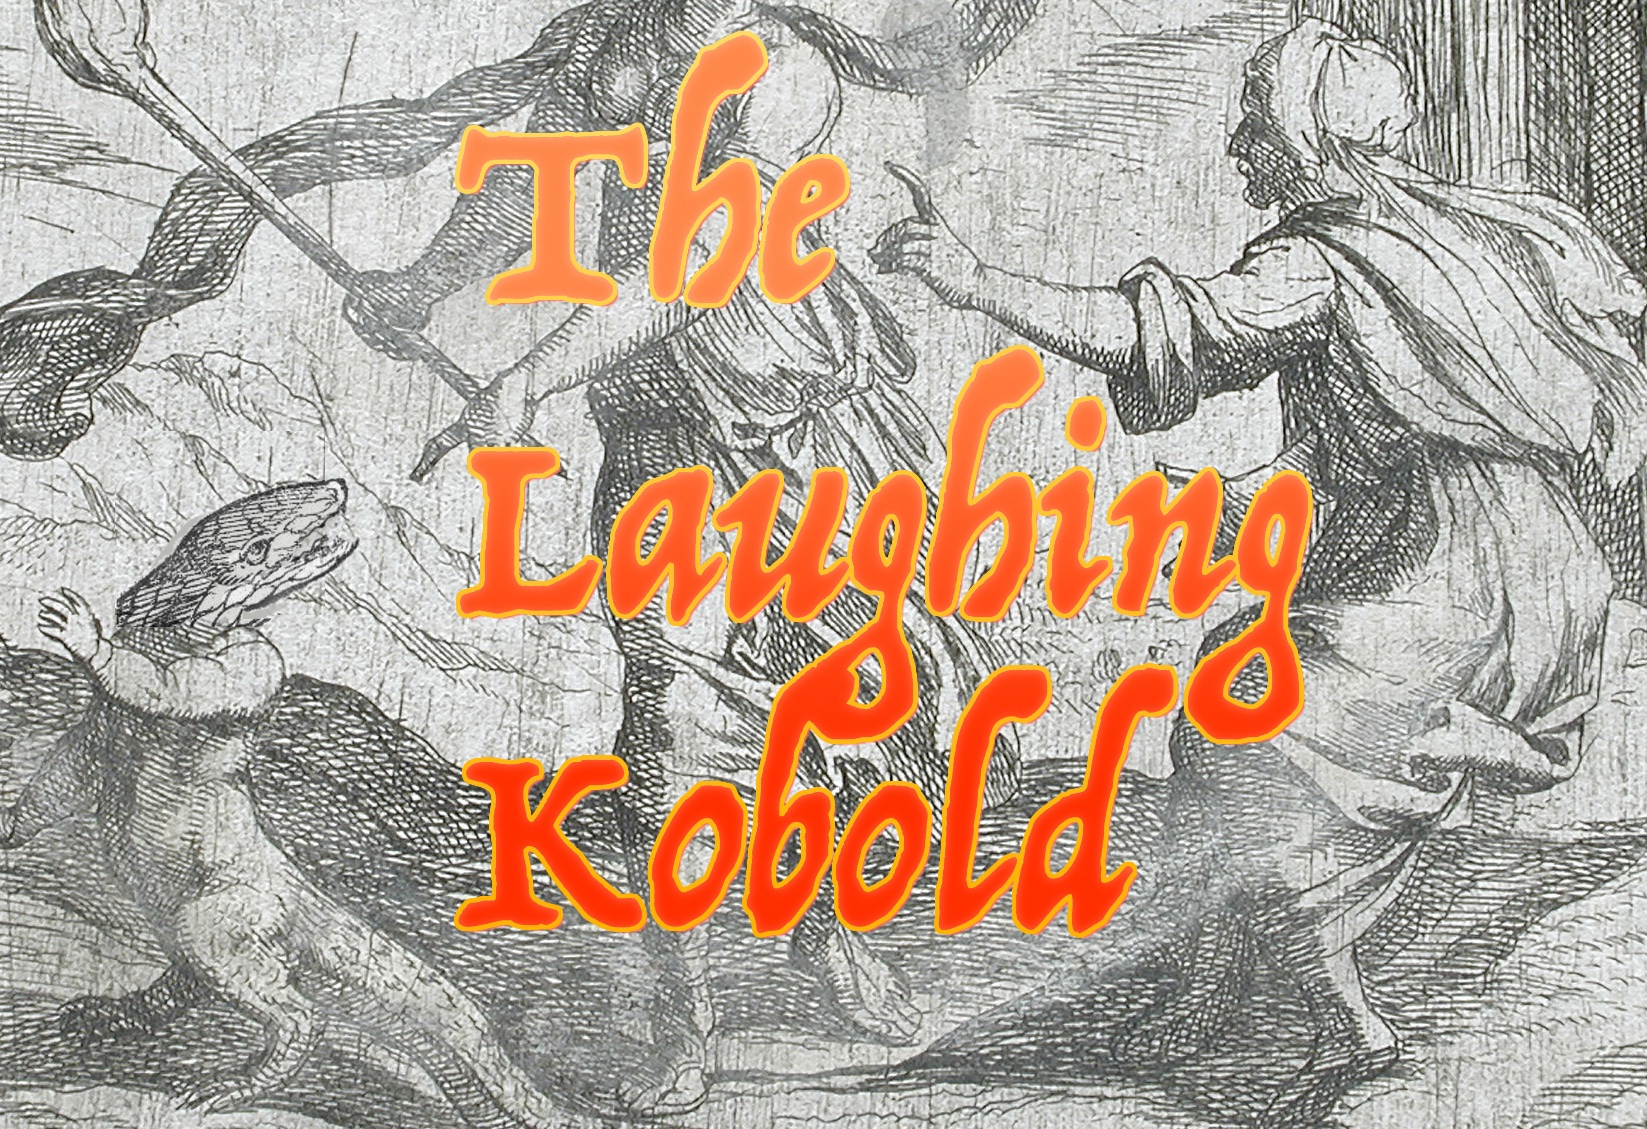 The Laughing Kobold